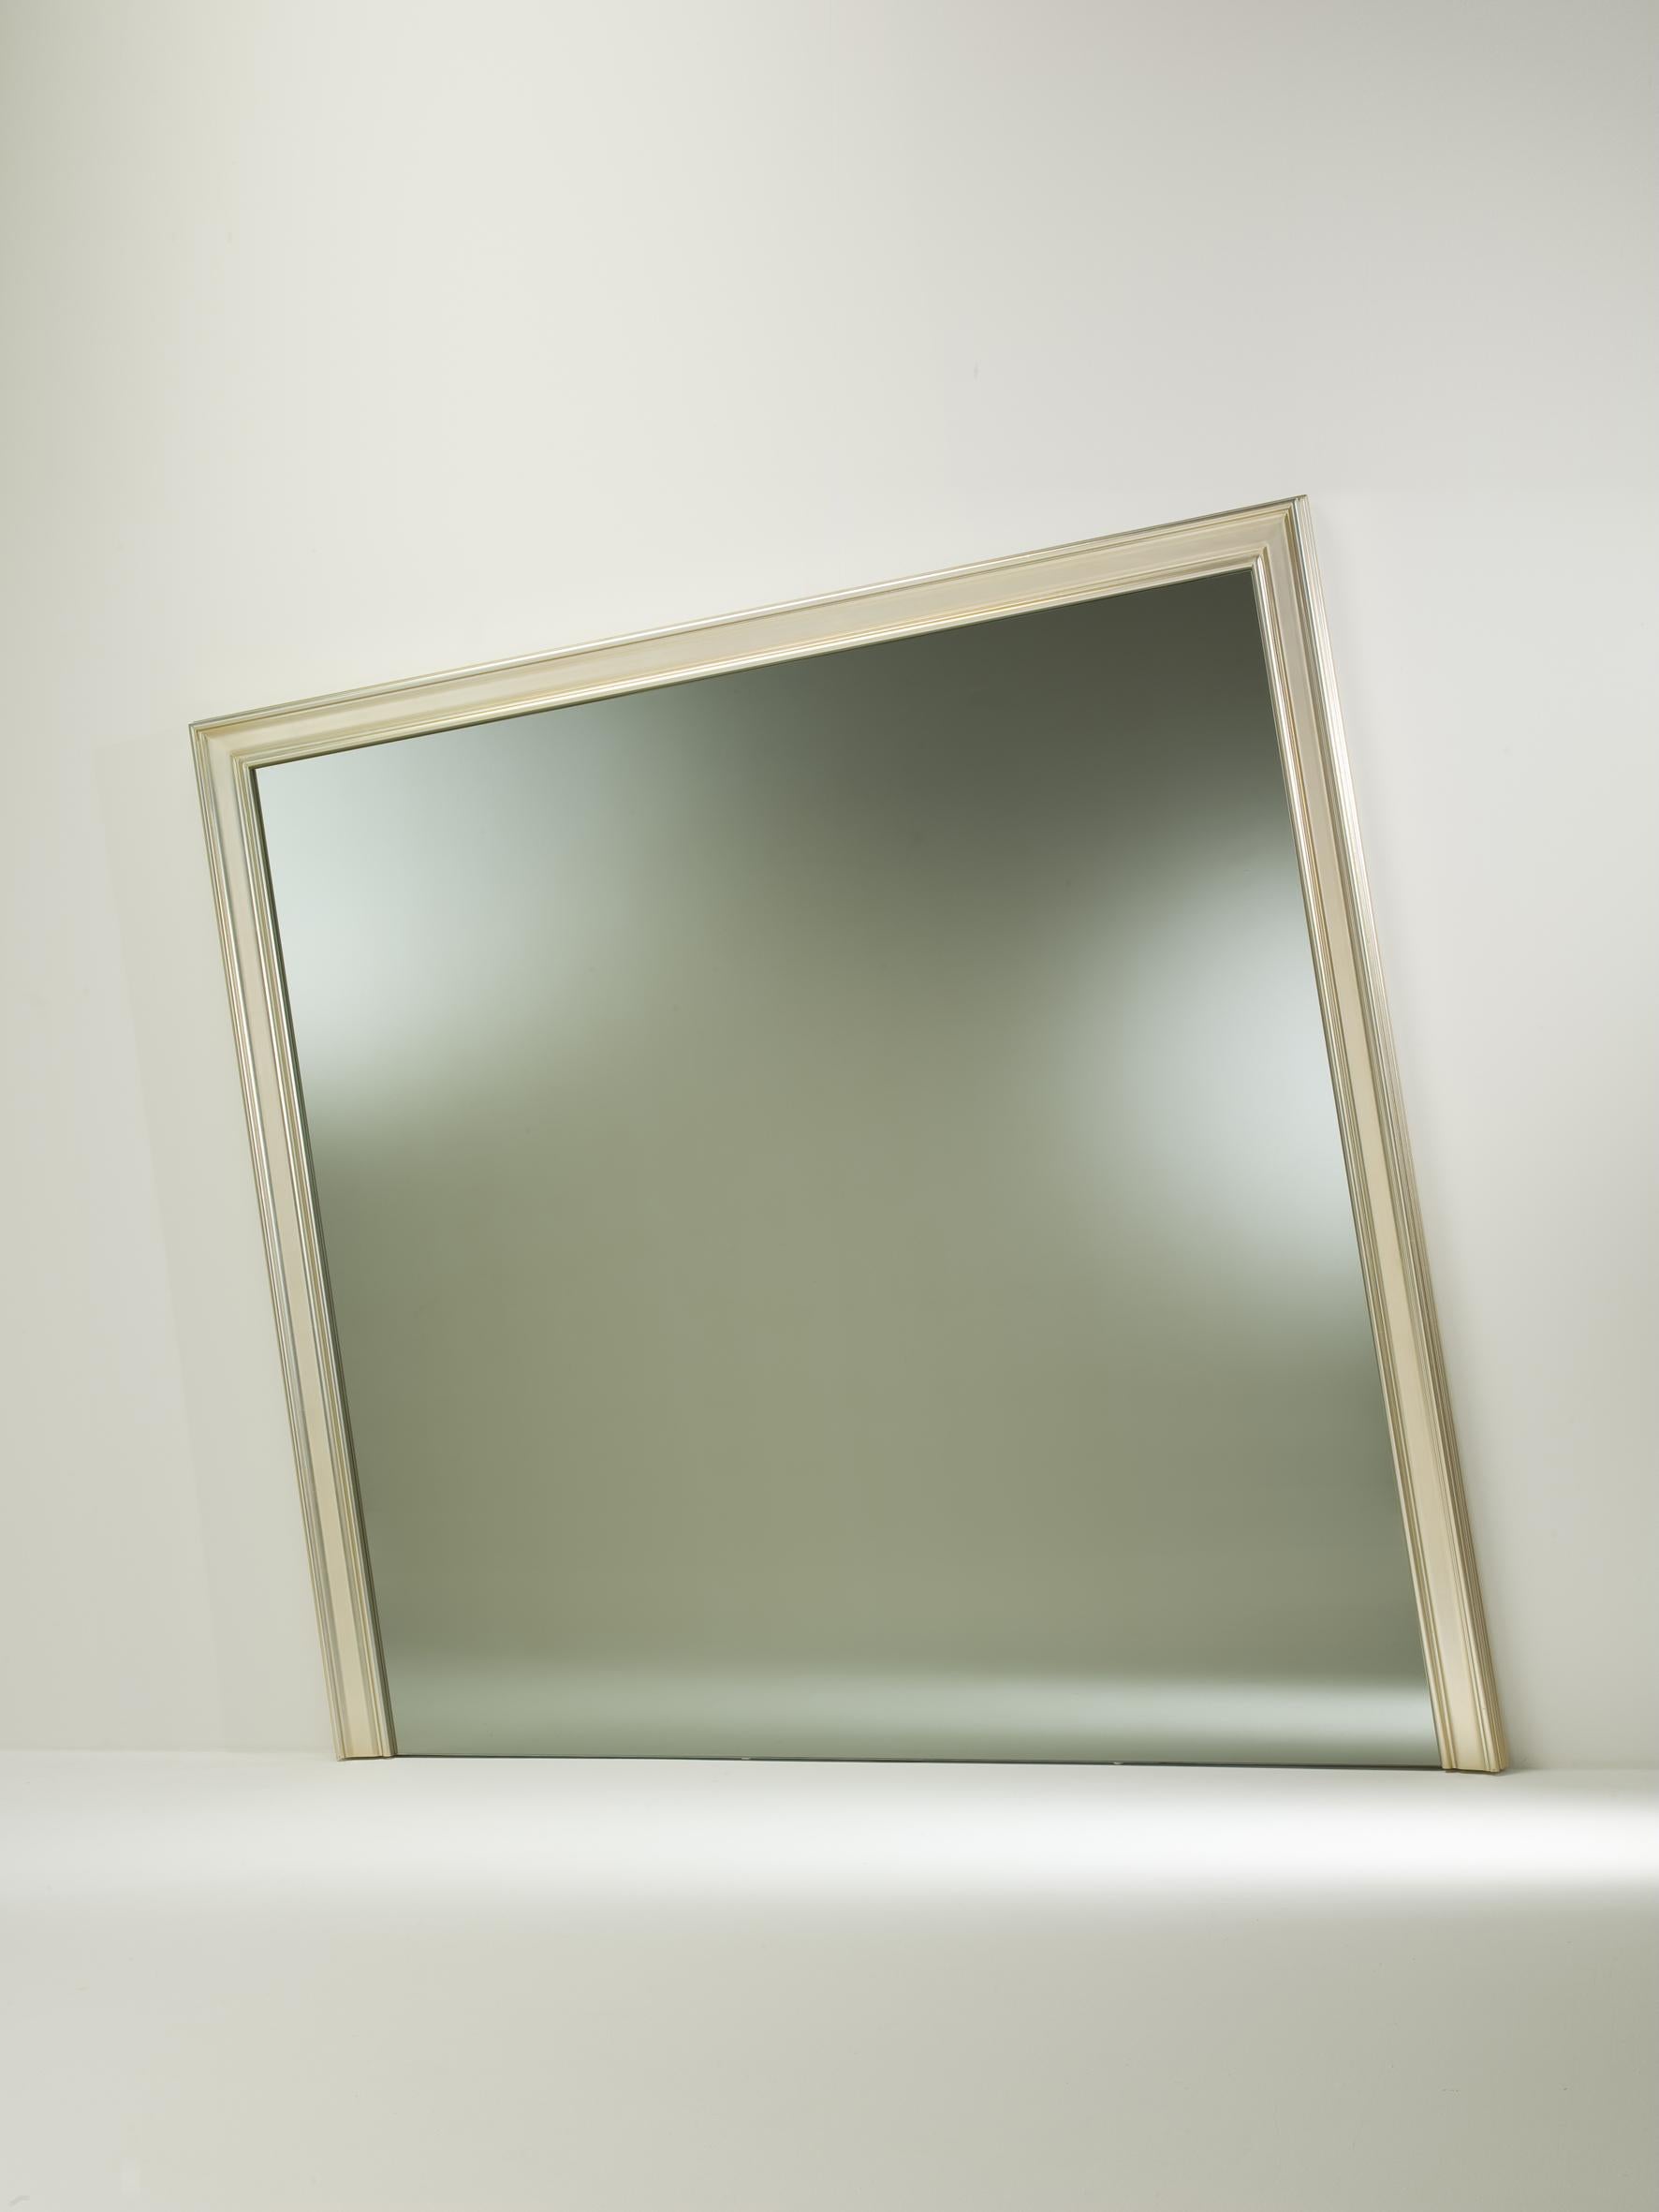 Betreten Sie das Reich der Illusion mit dem Decadence Mirror von Studio R2d - ein fesselndes Designspiel, das mit seinen verführerischen schrägen Linien der Schwerkraft trotzt. Dieser Spiegel ist mehr als nur ein Spiegelbild, er ist ein